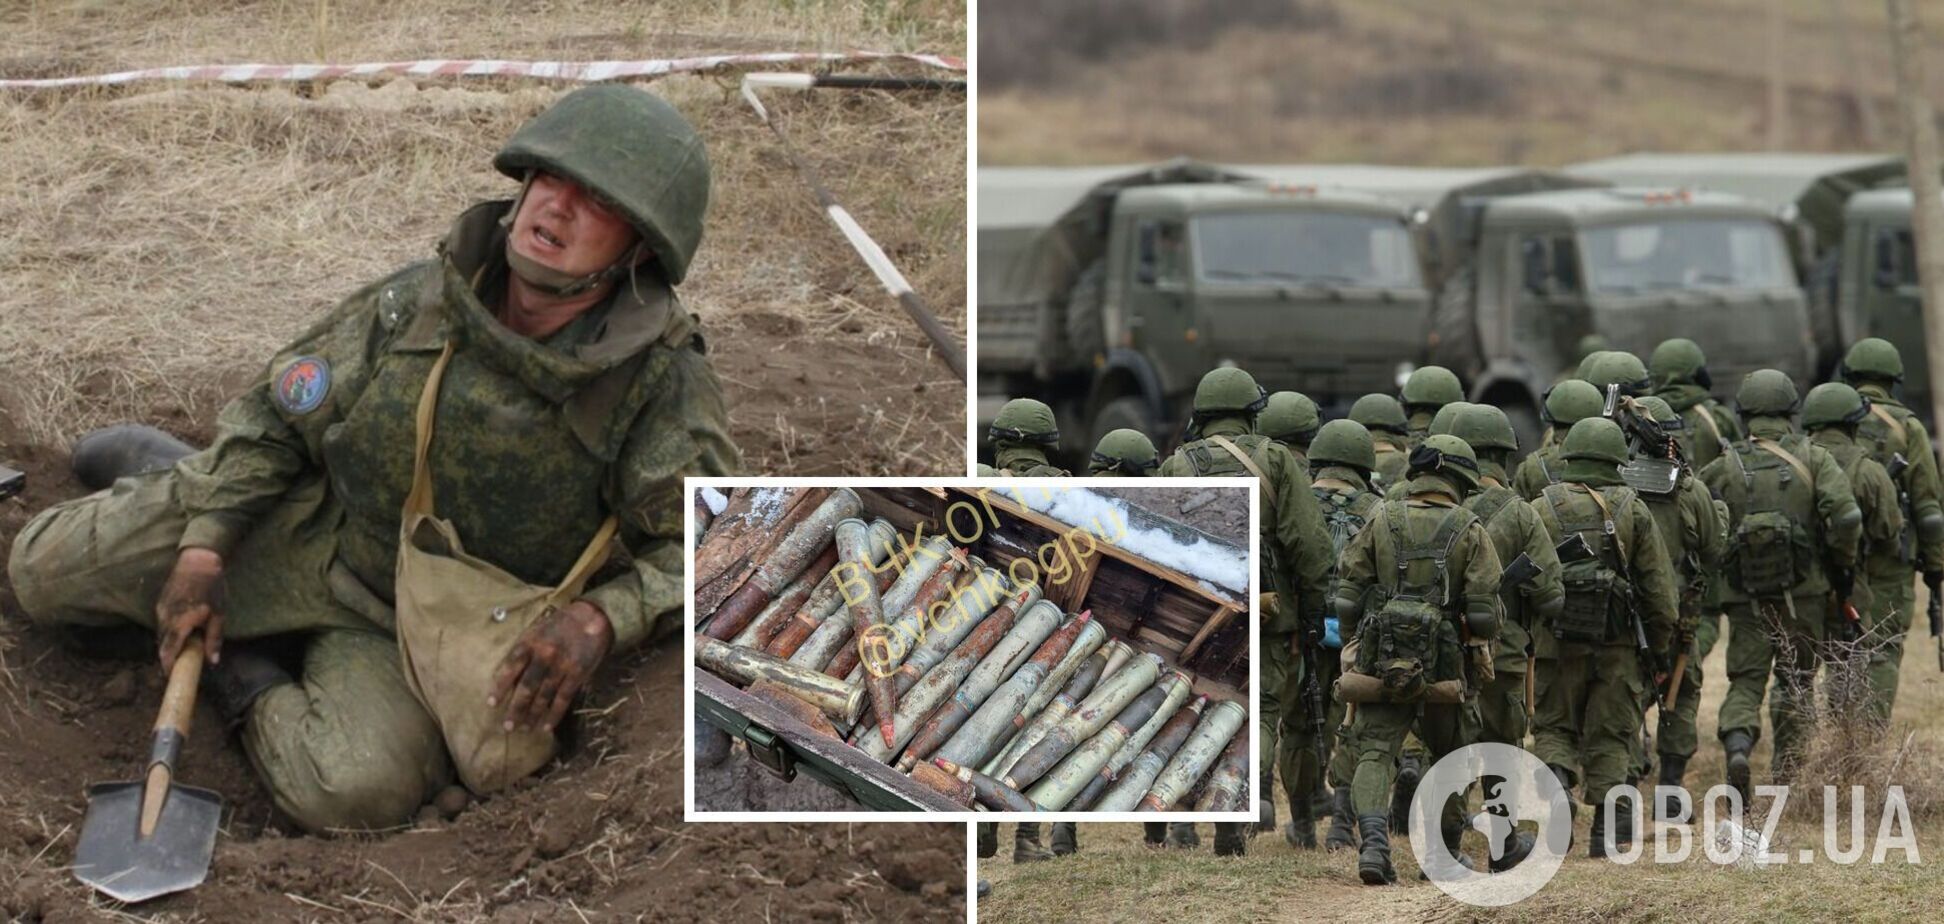 Боєприпасів бракує не тільки 'вагнерівцям': стало відомо про дефіцит озброєння в інших підрозділах армії РФ. Фото